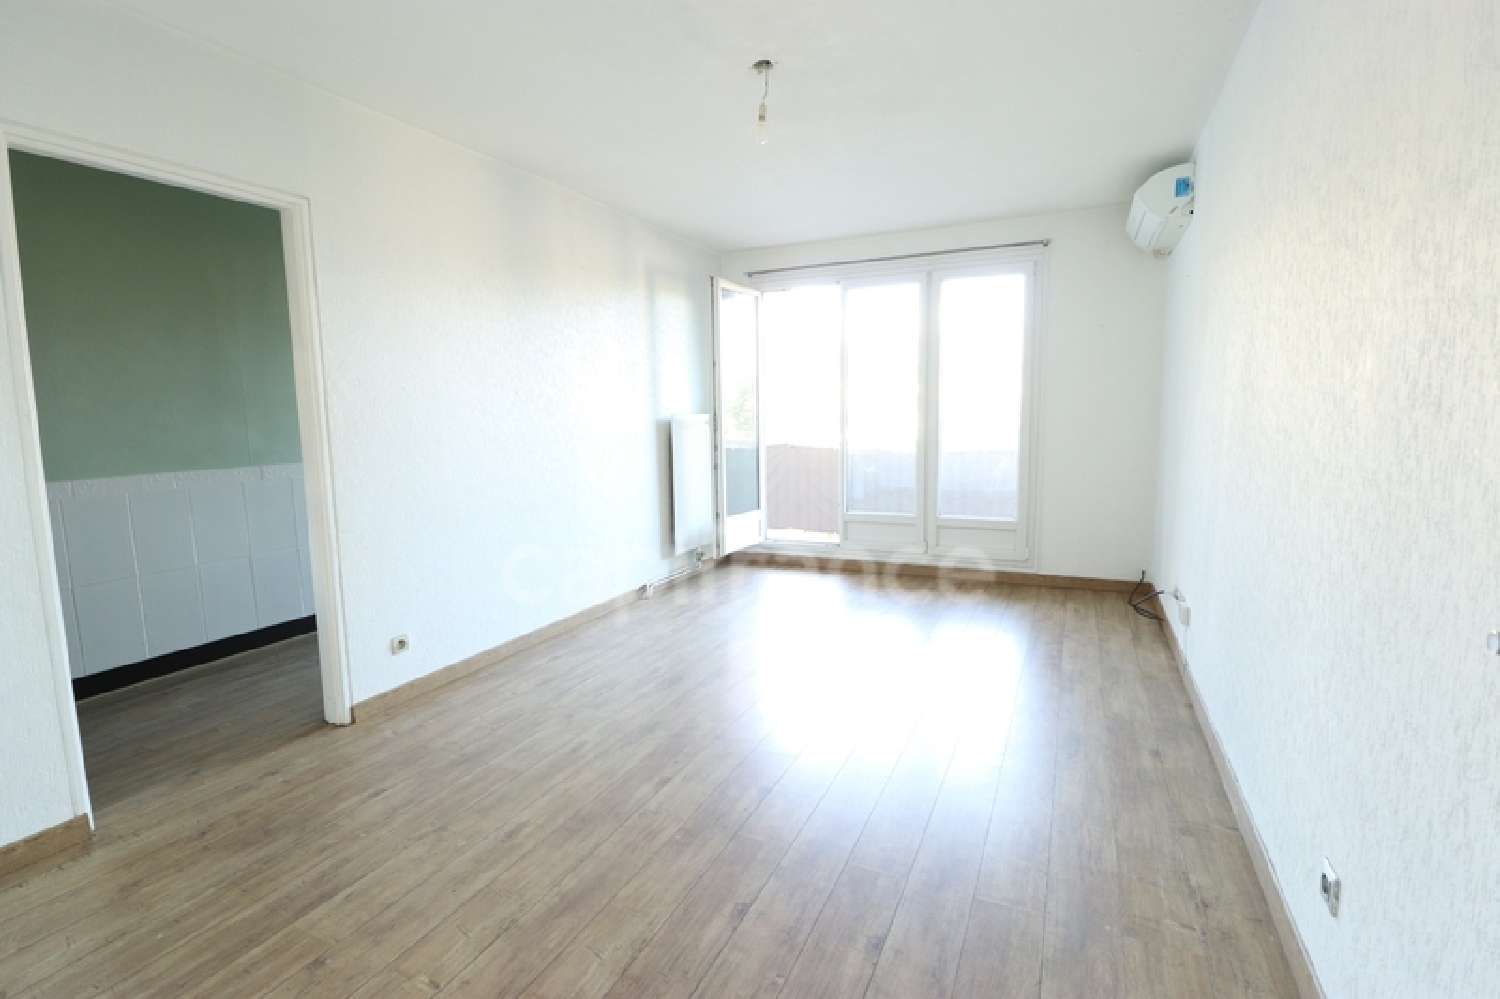  for sale apartment Toulon 83100 Var 2